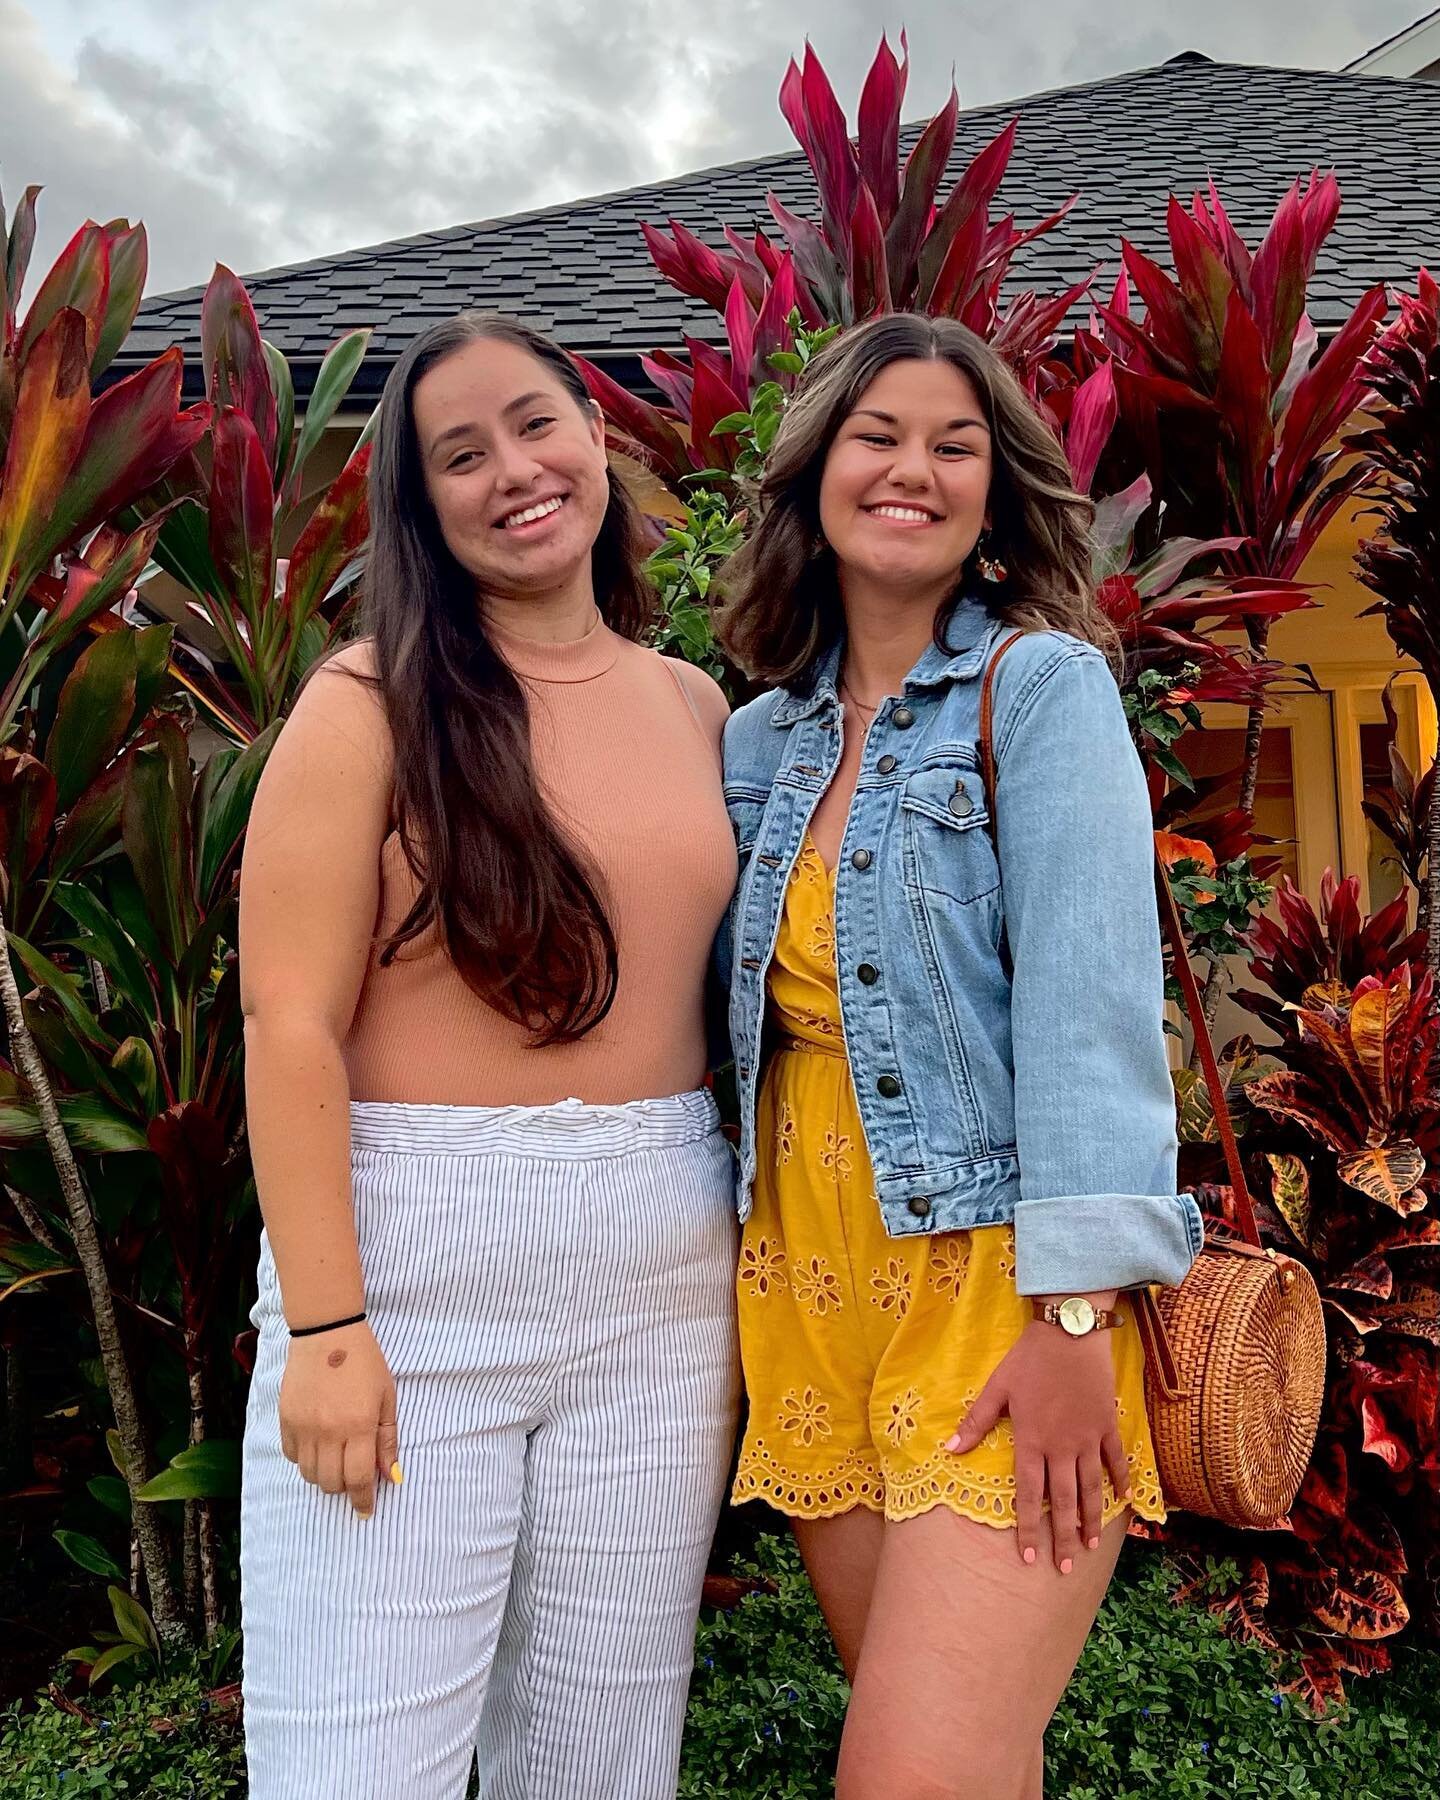 Aloha and mahalo 🌺